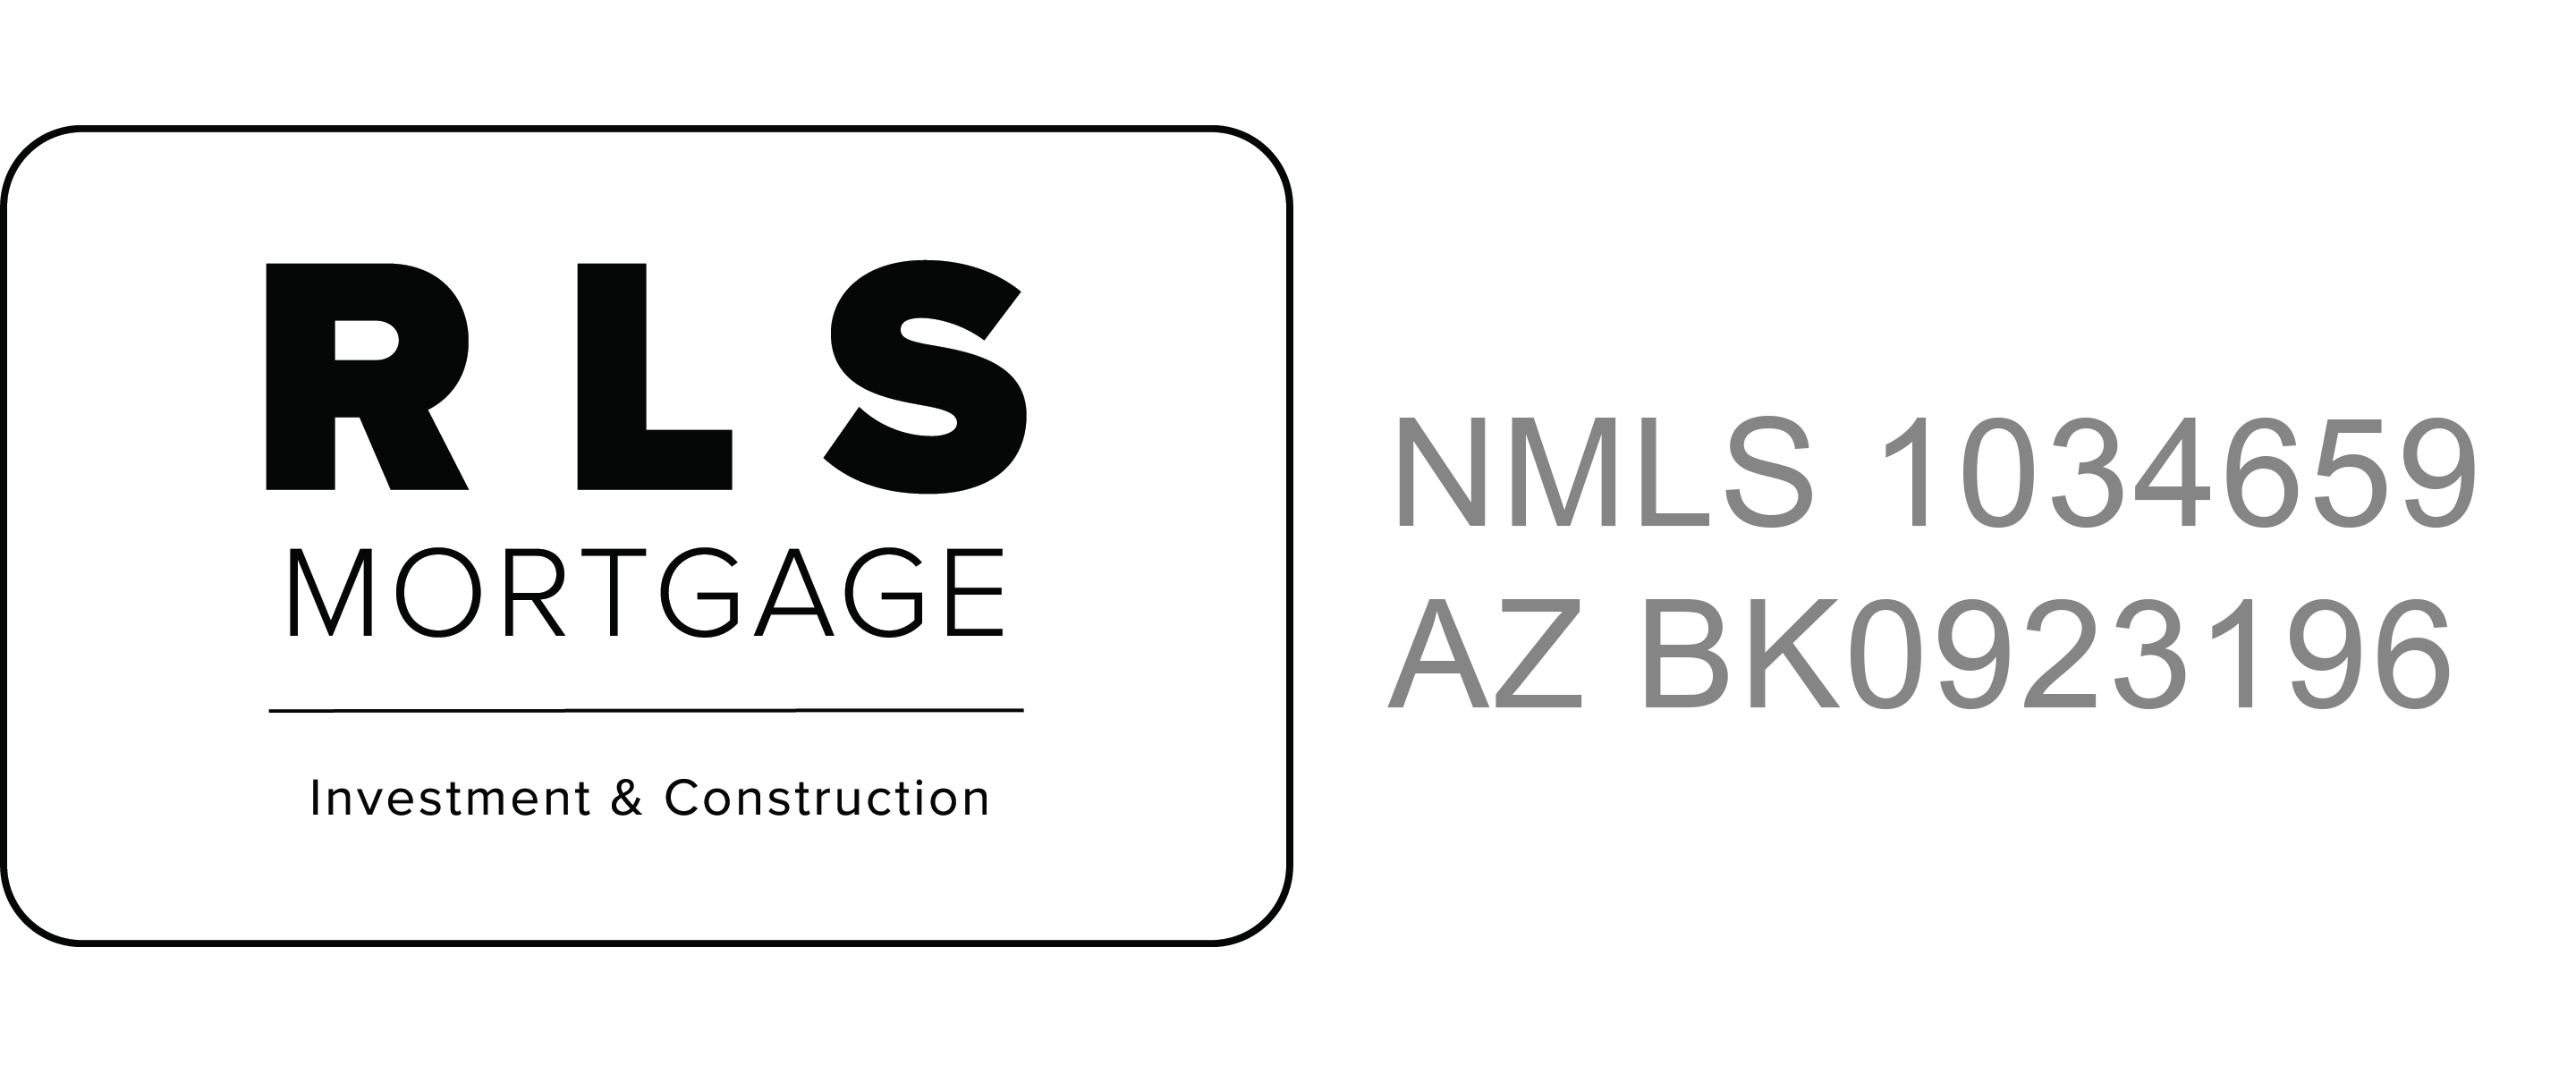 RLS mortgage logo